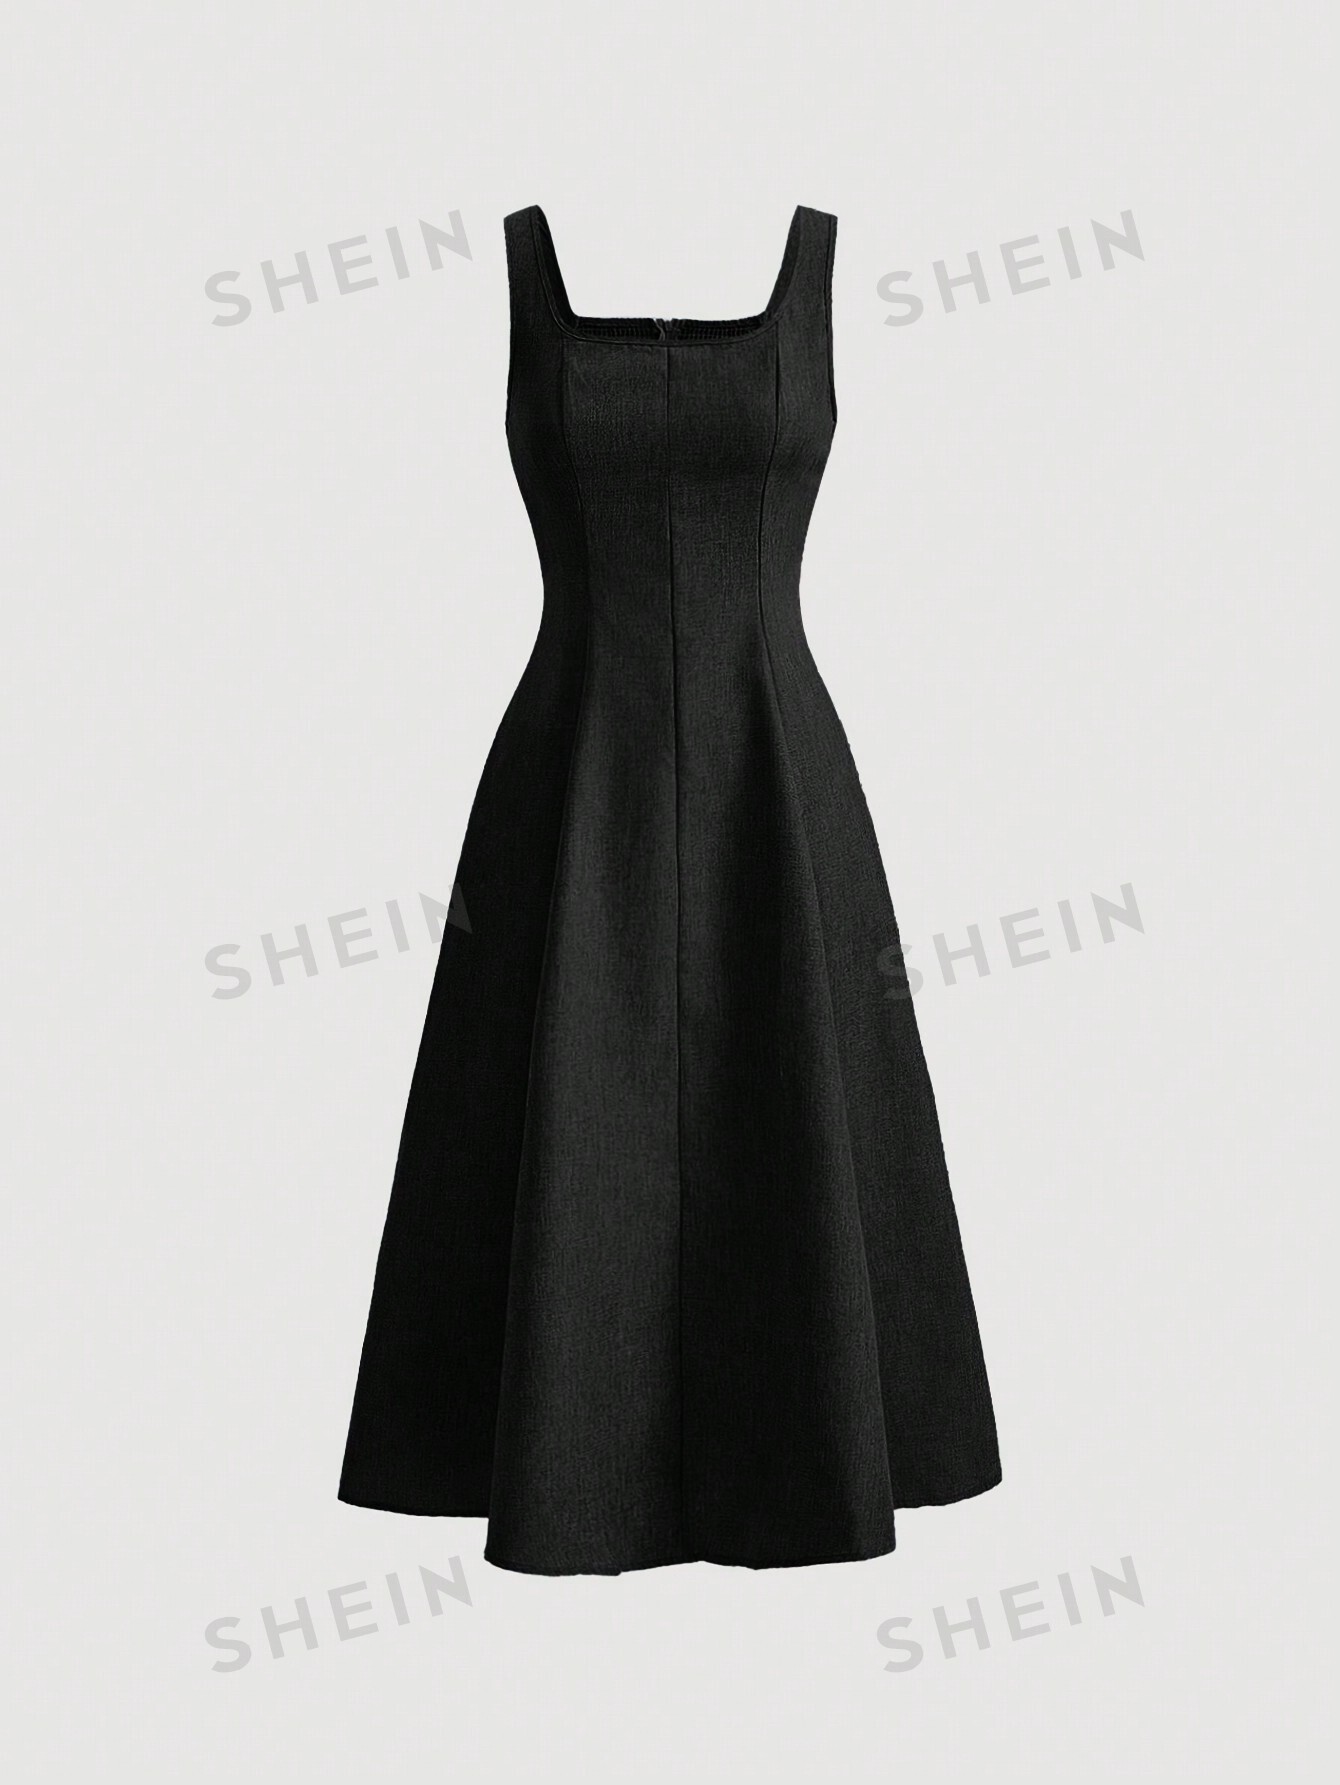 shein mod однотонное платье с гофрированной спиной и расклешенным подолом синий SHEIN MOD однотонное платье с гофрированной спиной и расклешенным подолом, черный